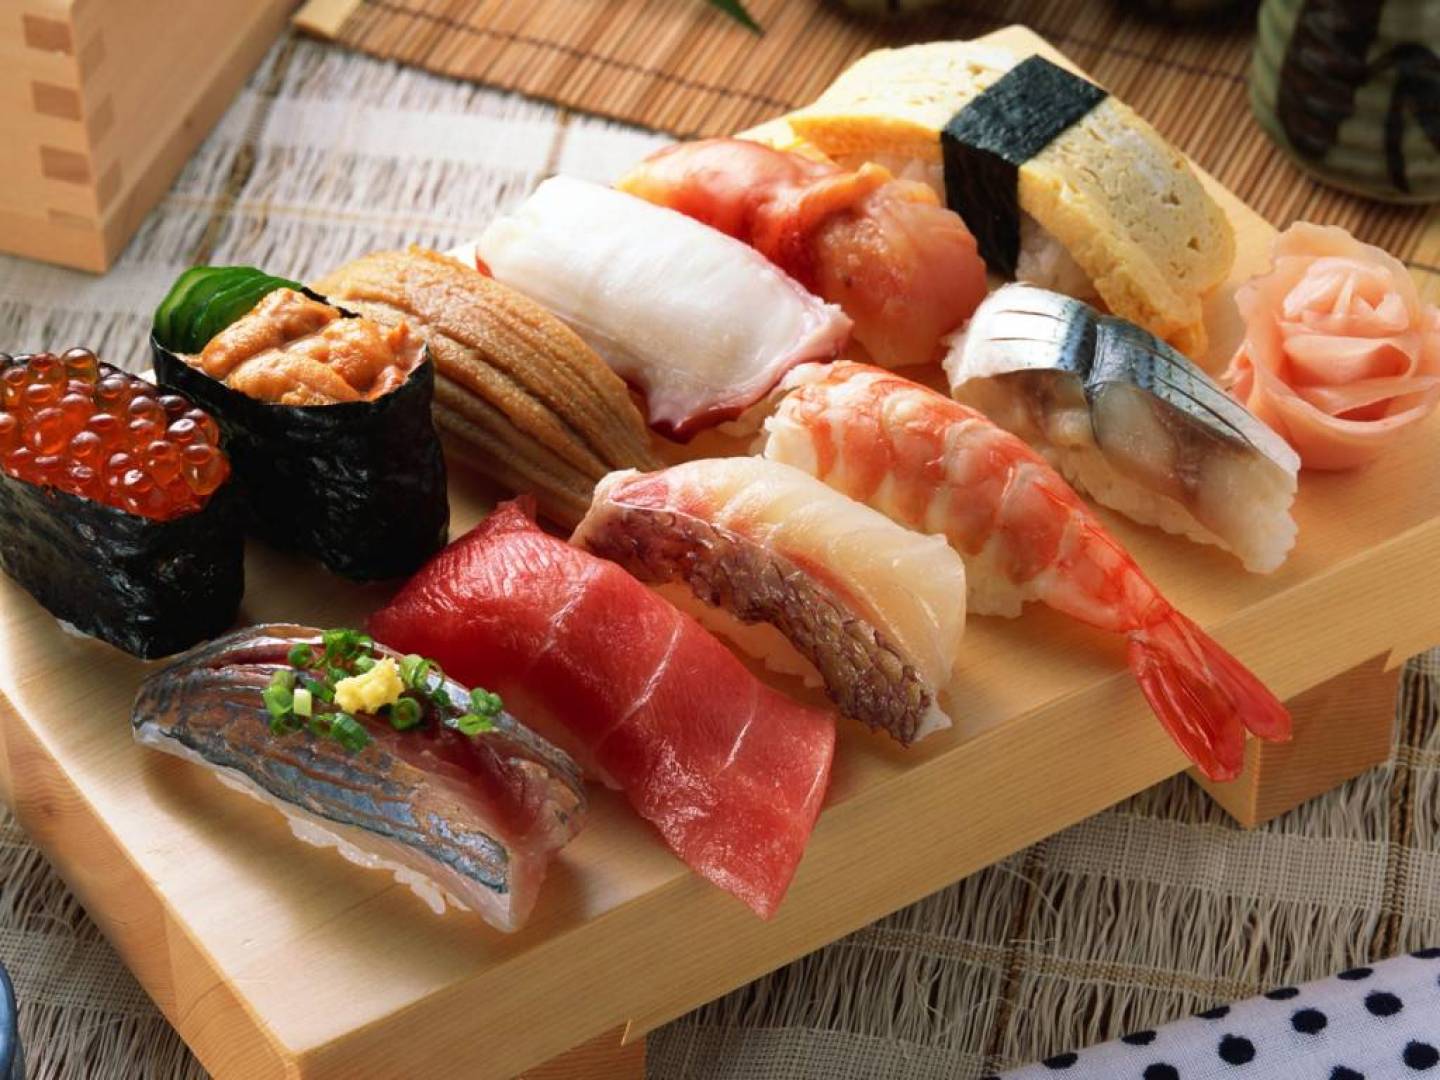 أطعمة في النظام الغذائي الياباني تساعد في علاج مرض الكبد الدهني